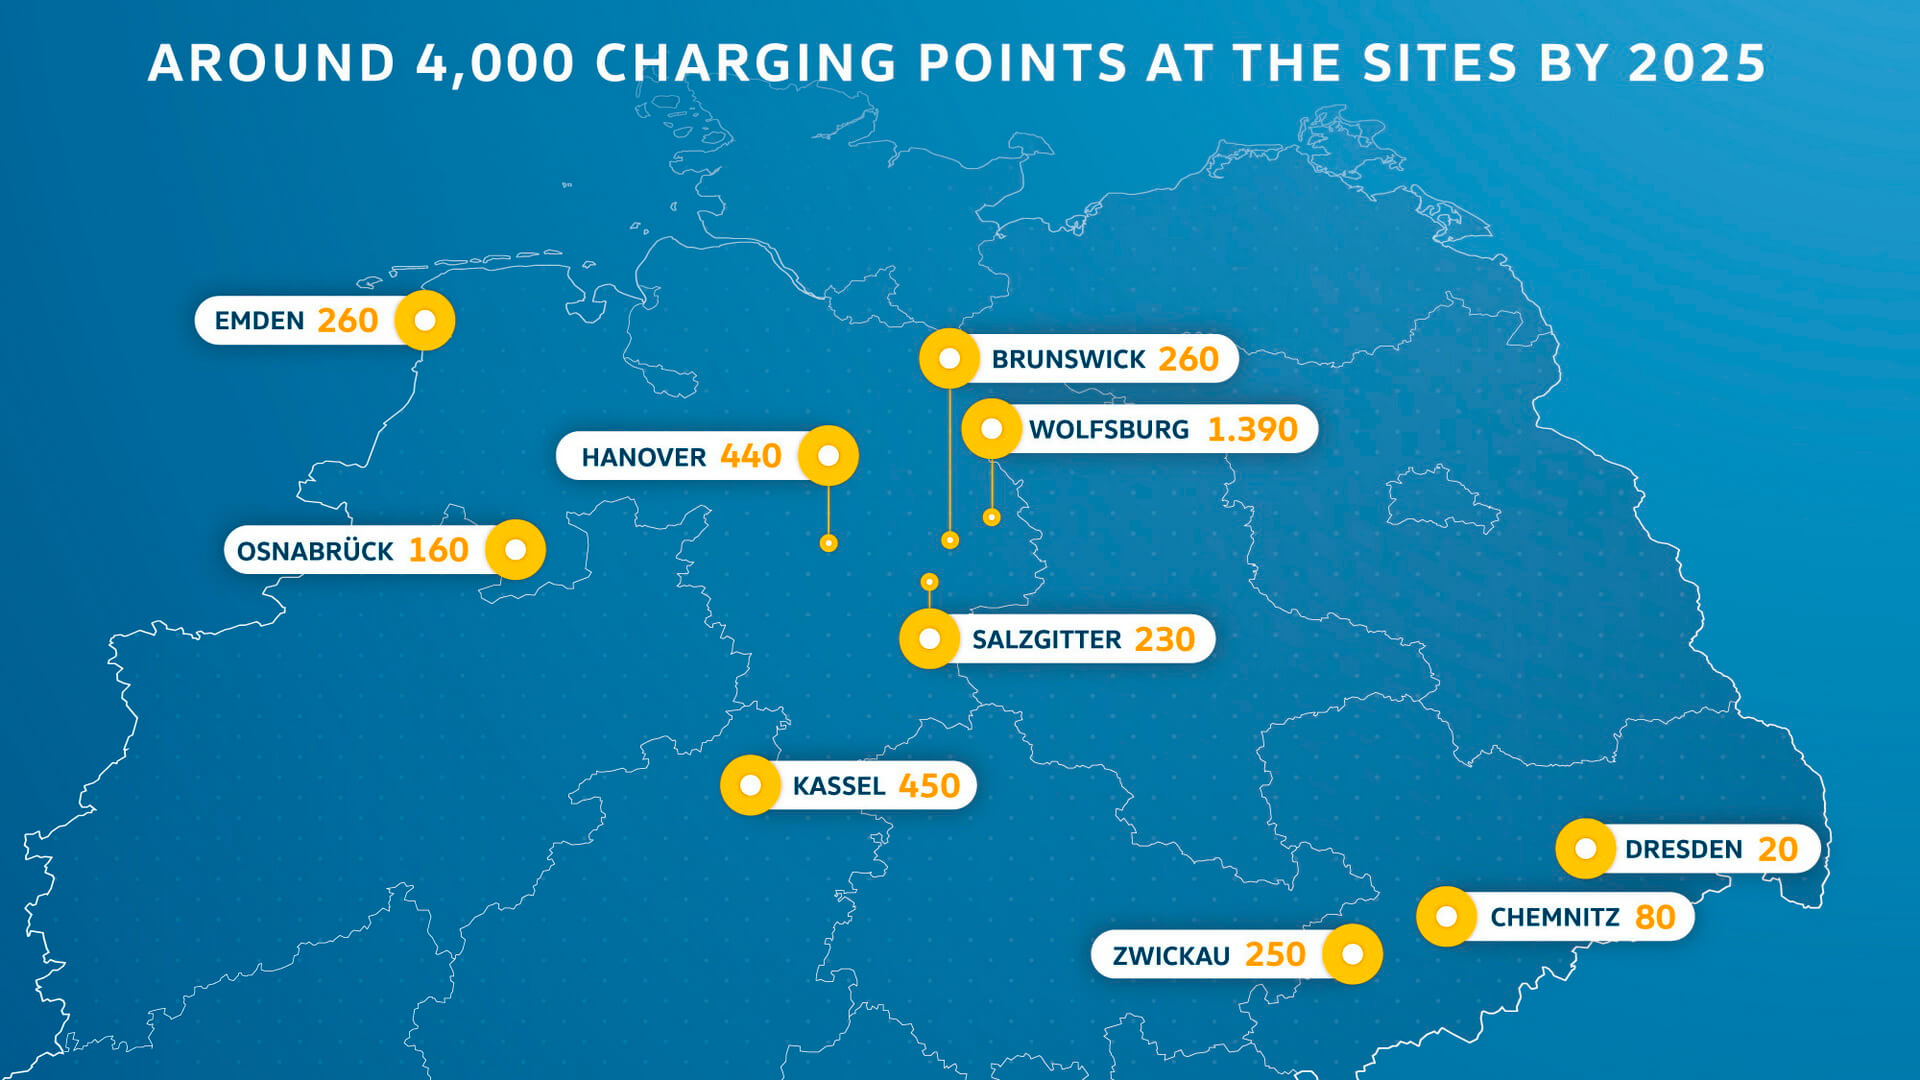 К 2025 году в десяти местах по всей Германии должно быть установлено 4 000 пунктов зарядки